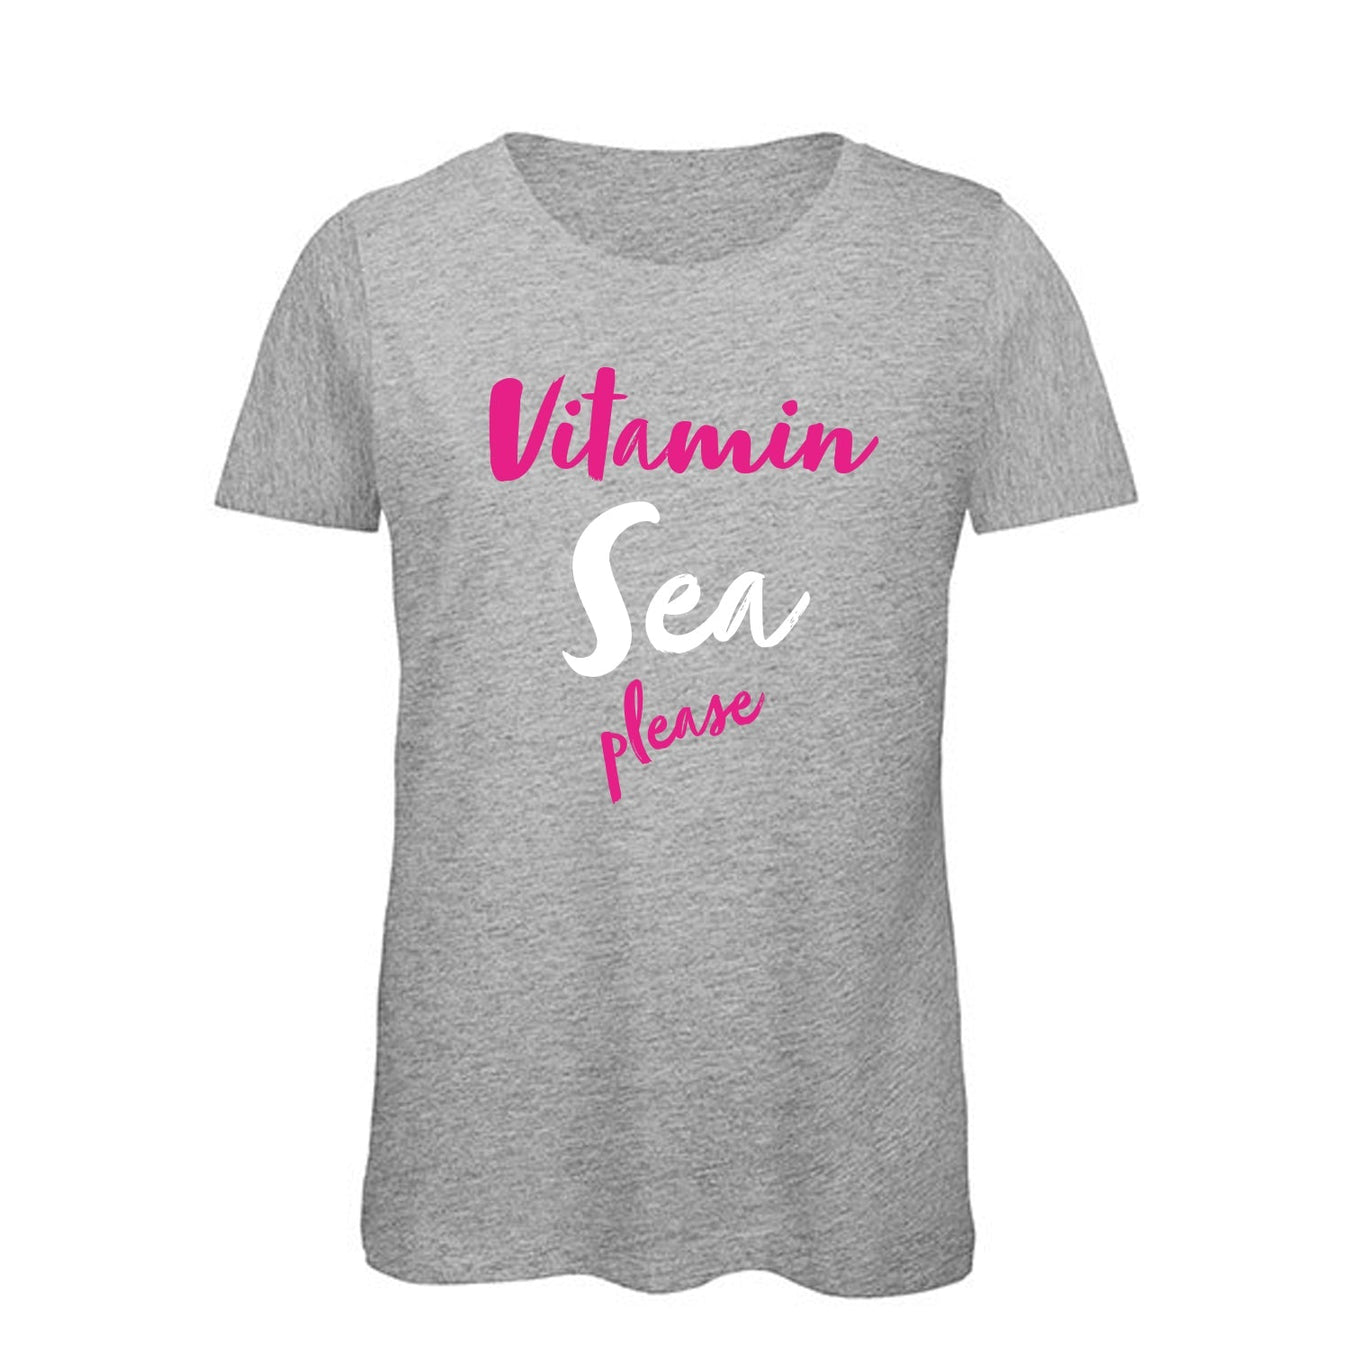 Design: Vitamin Sea